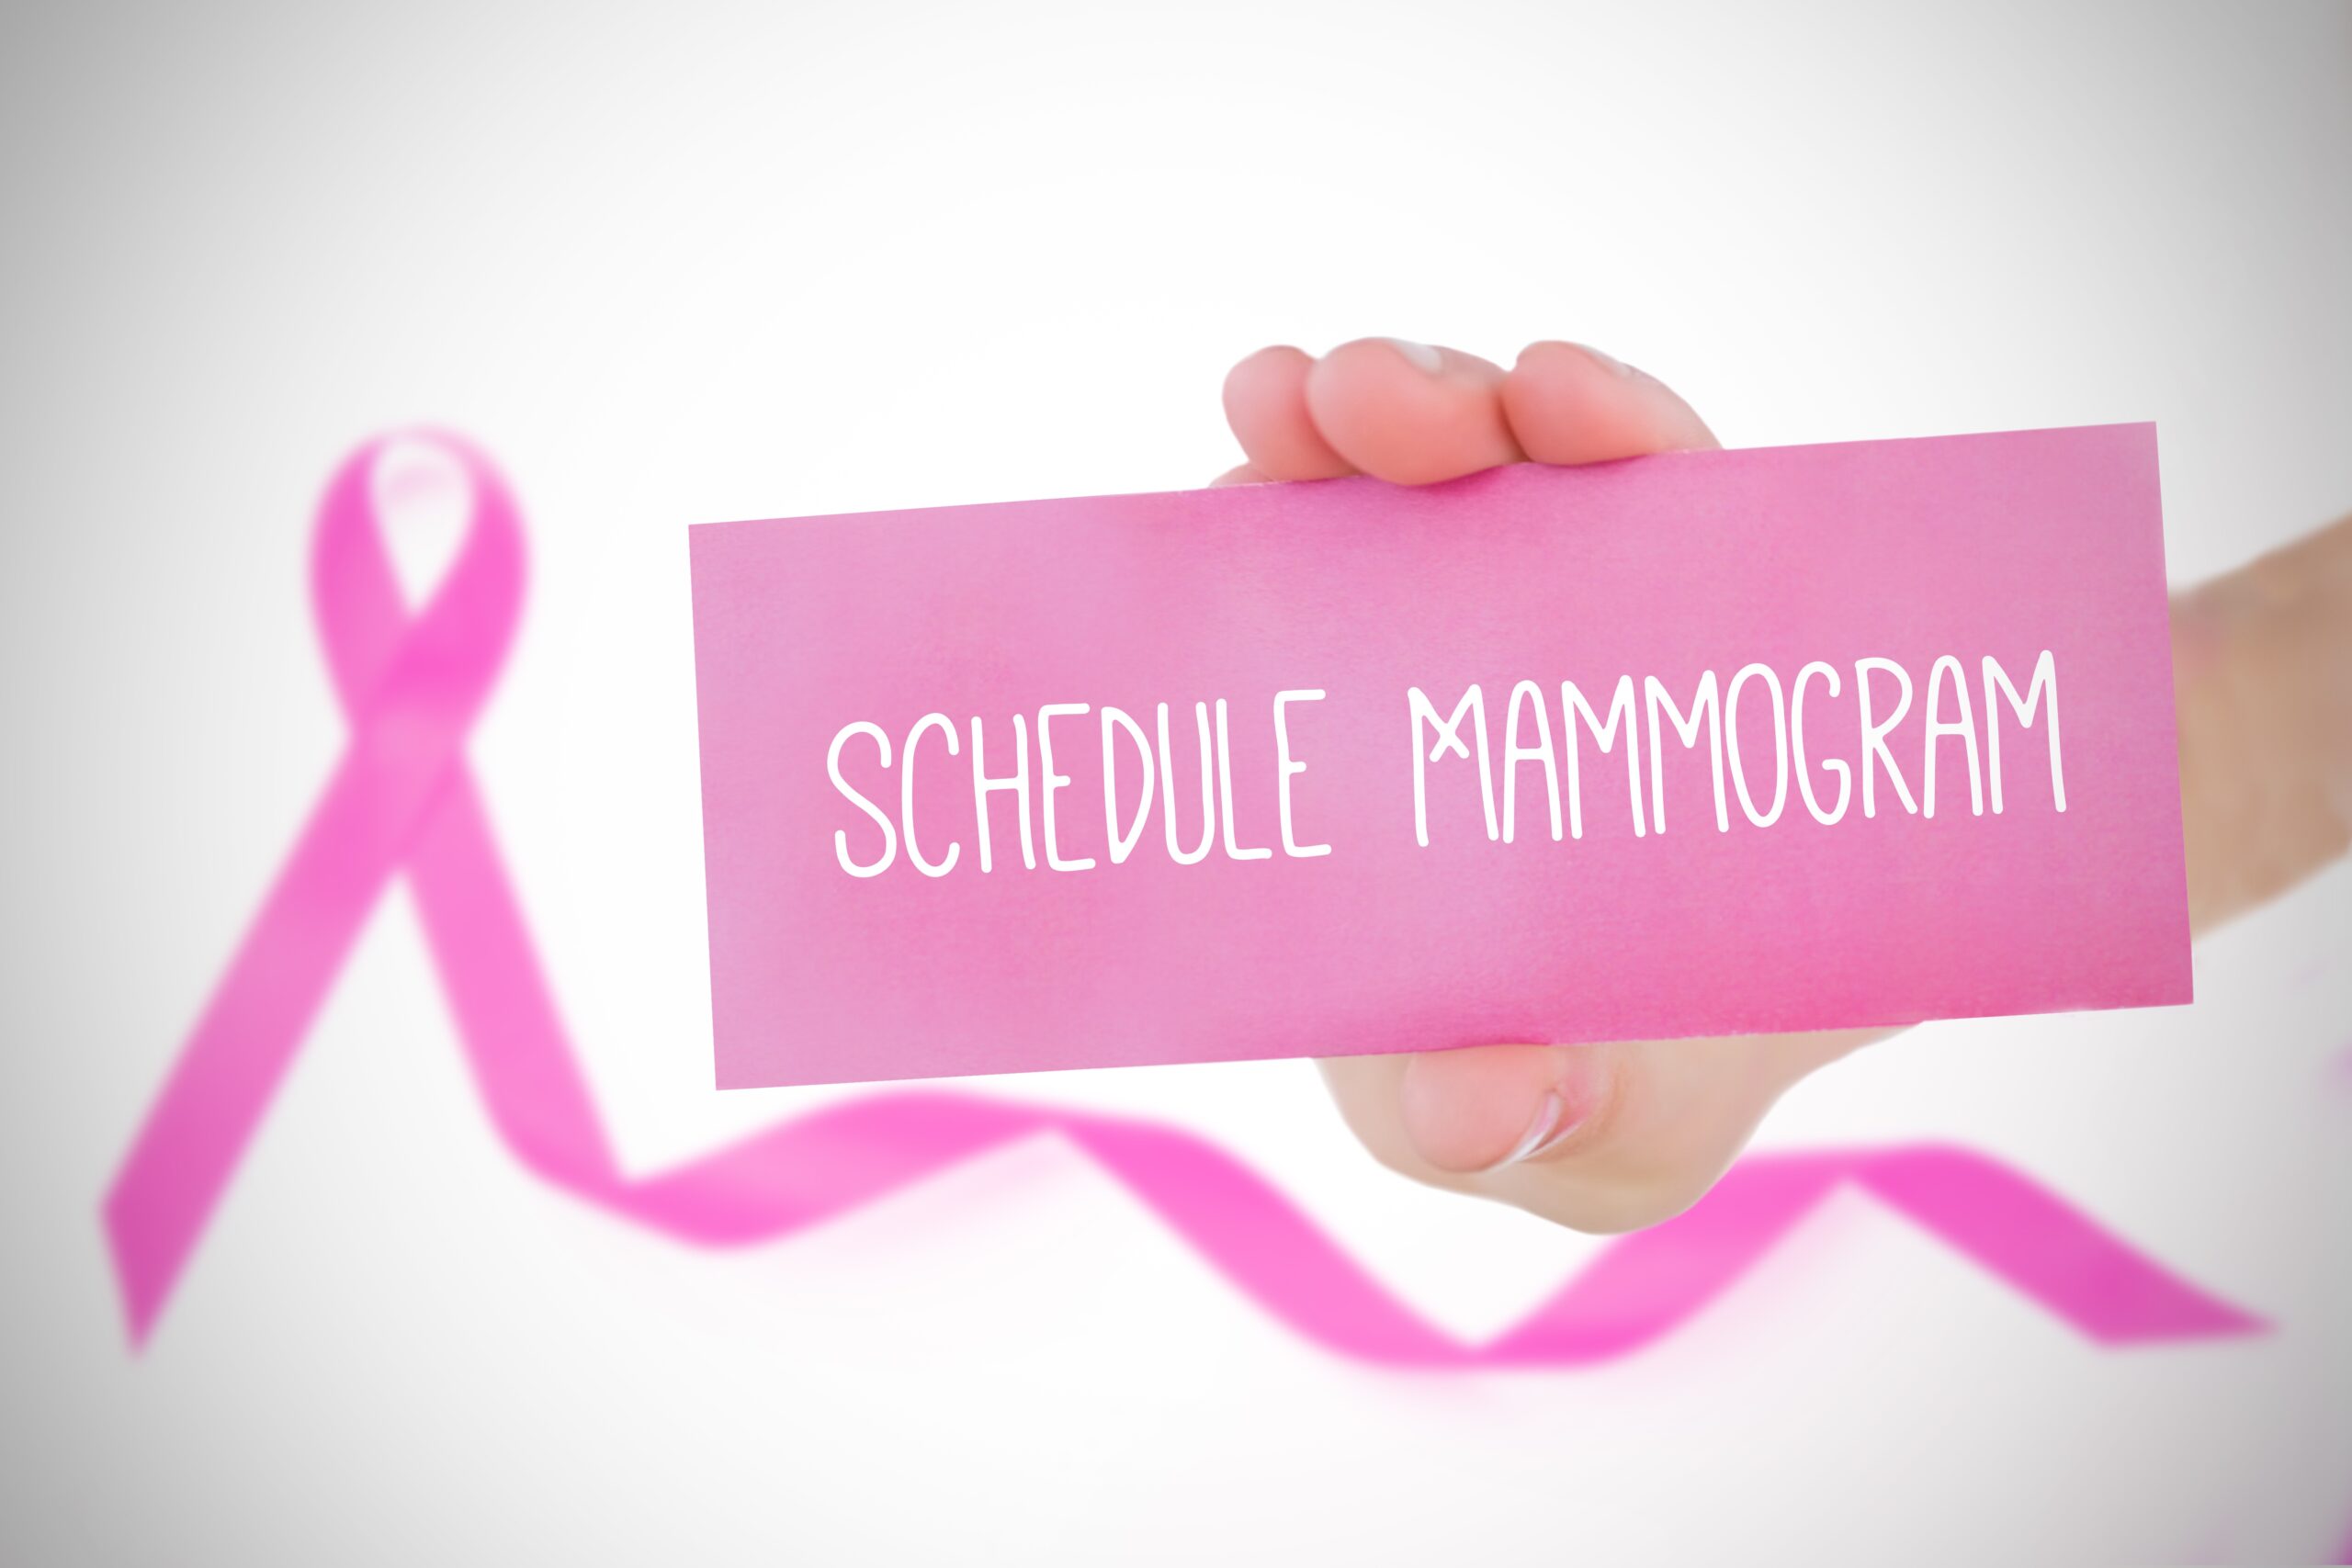 Scheduling a Mammogram? Don’t Wait!